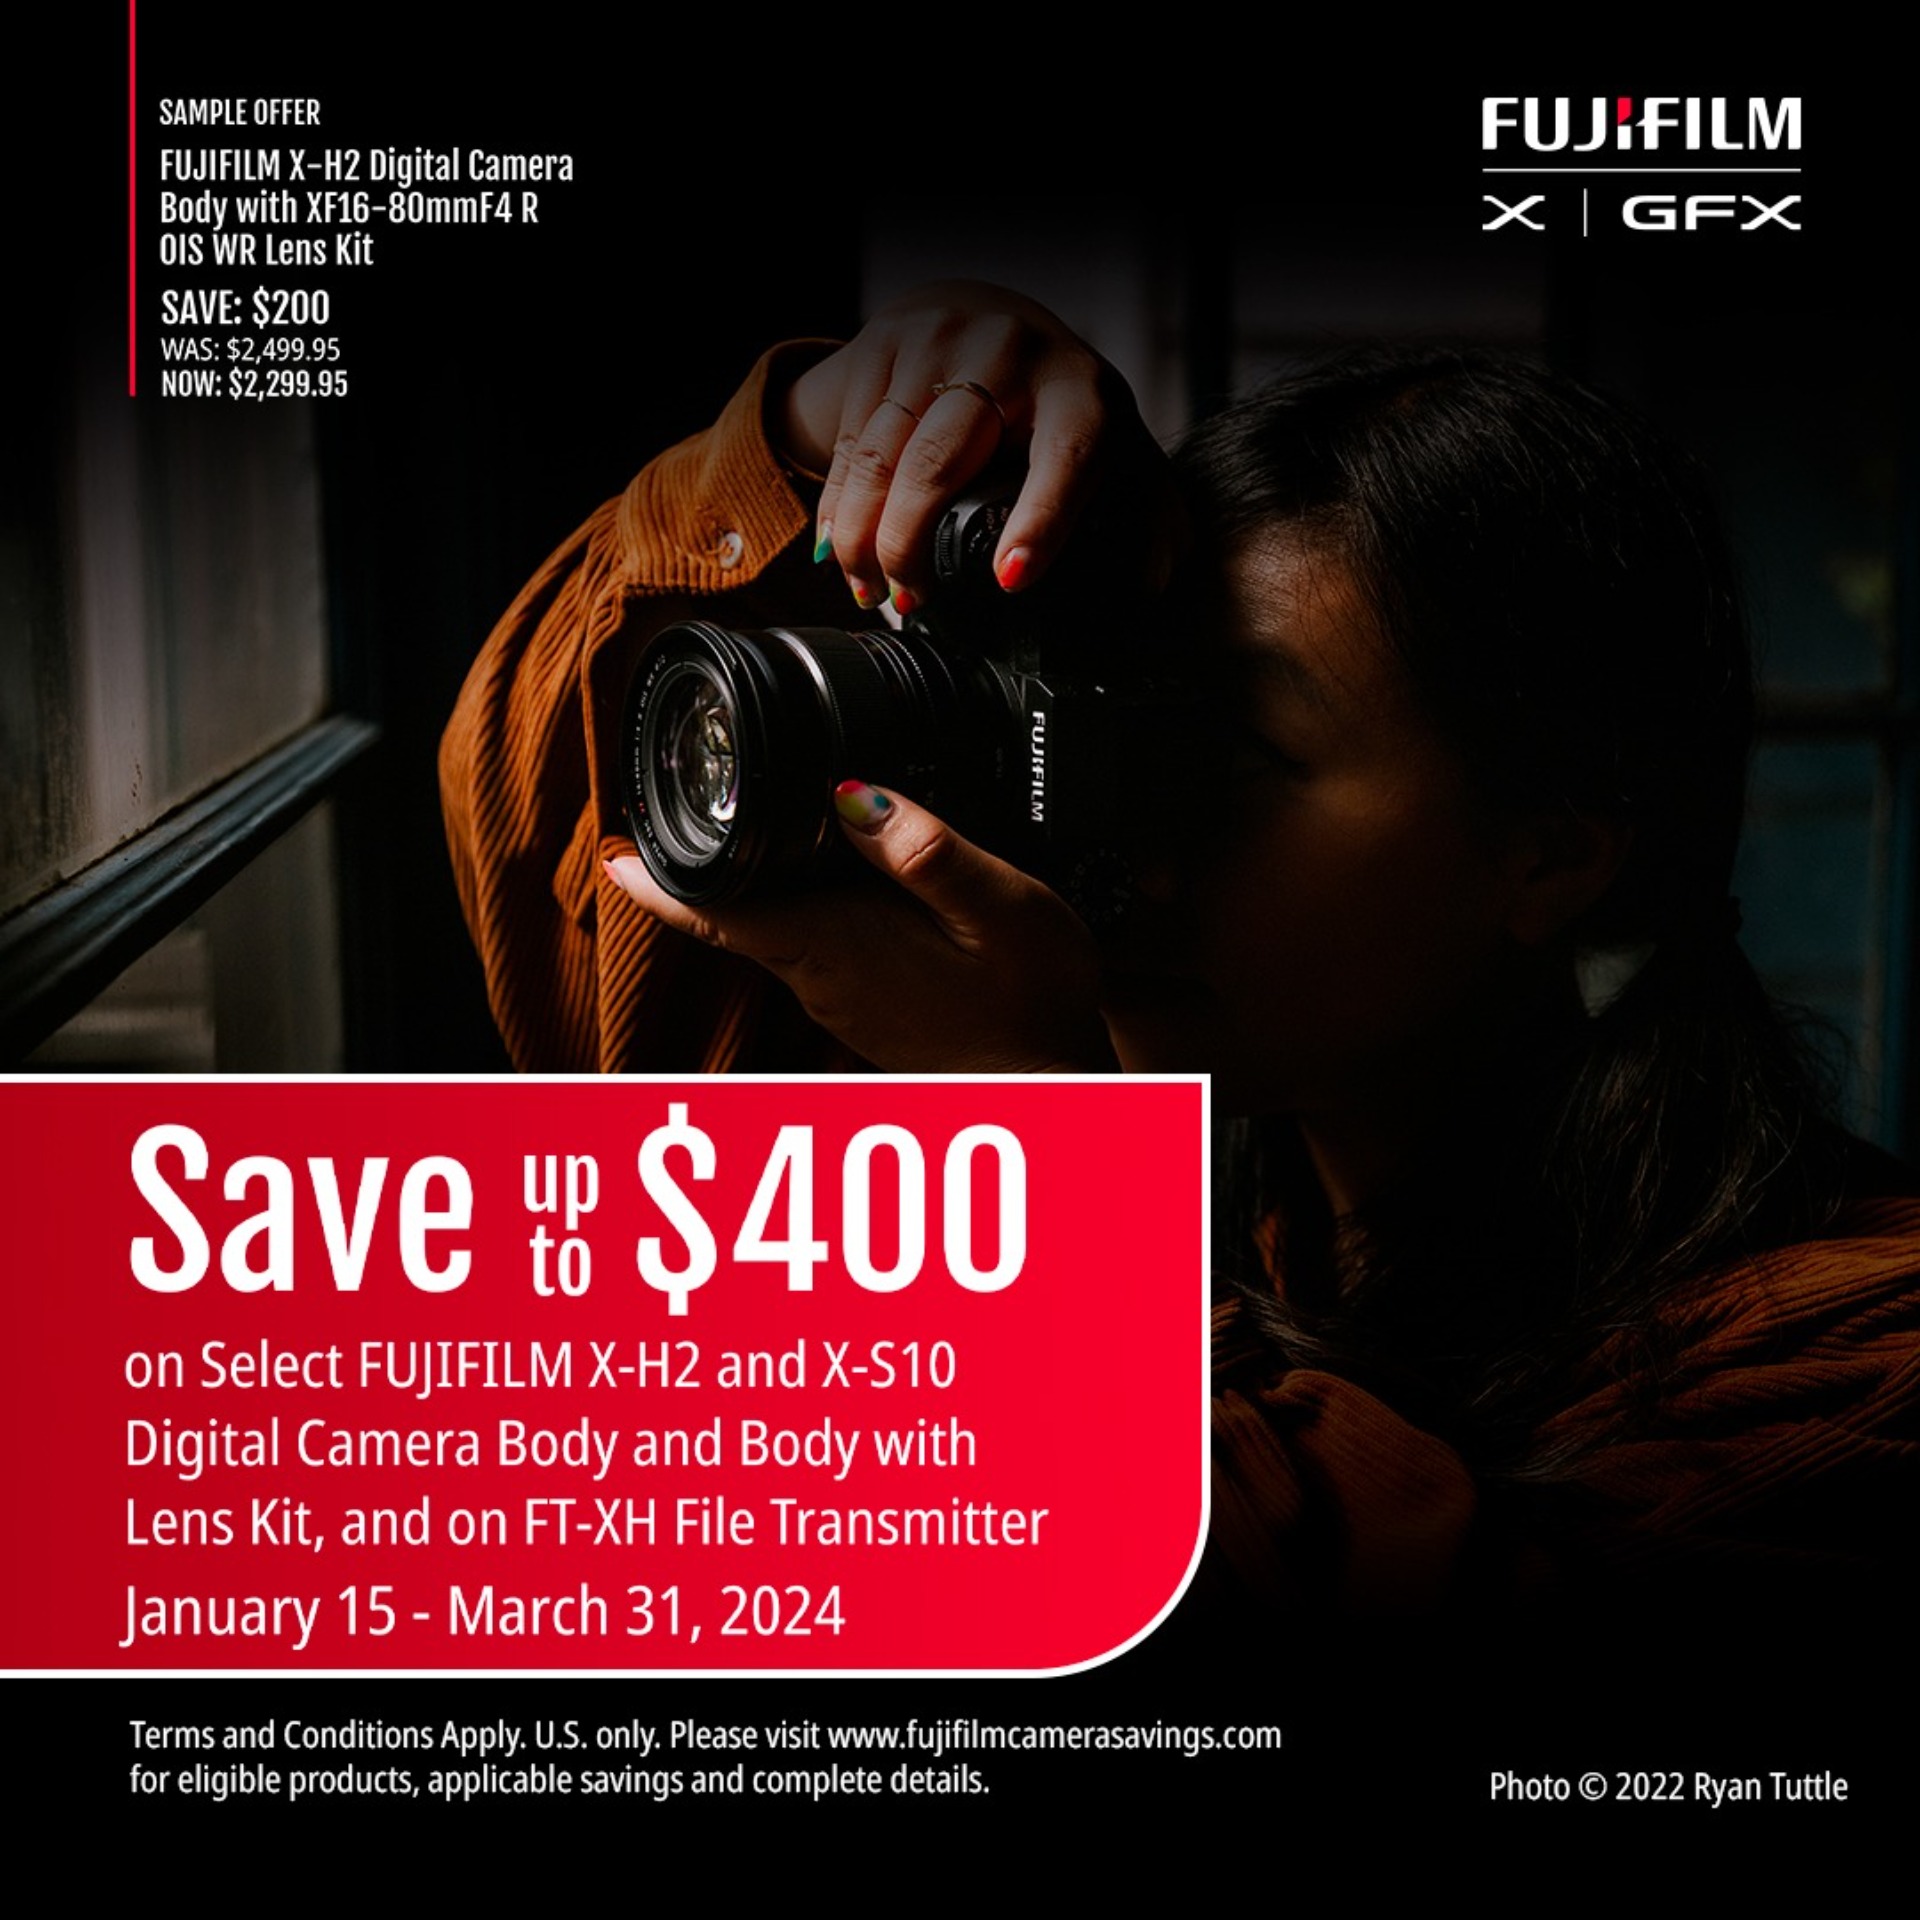 Fujifilm X Savings! 1/15-3/31